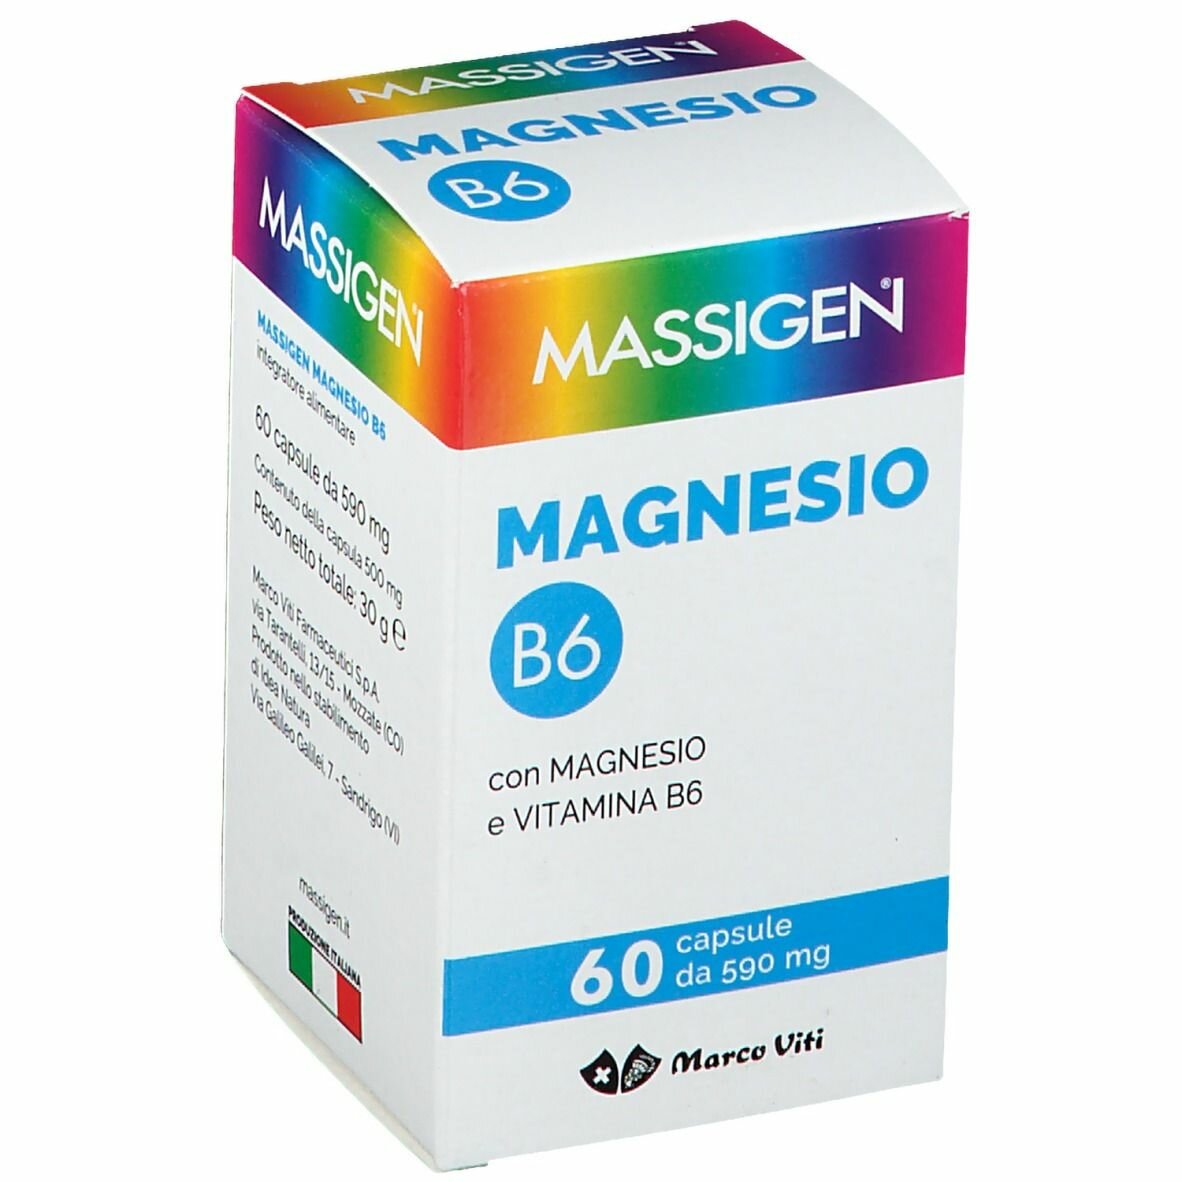 Massigen magnesio b6 60 capsule img